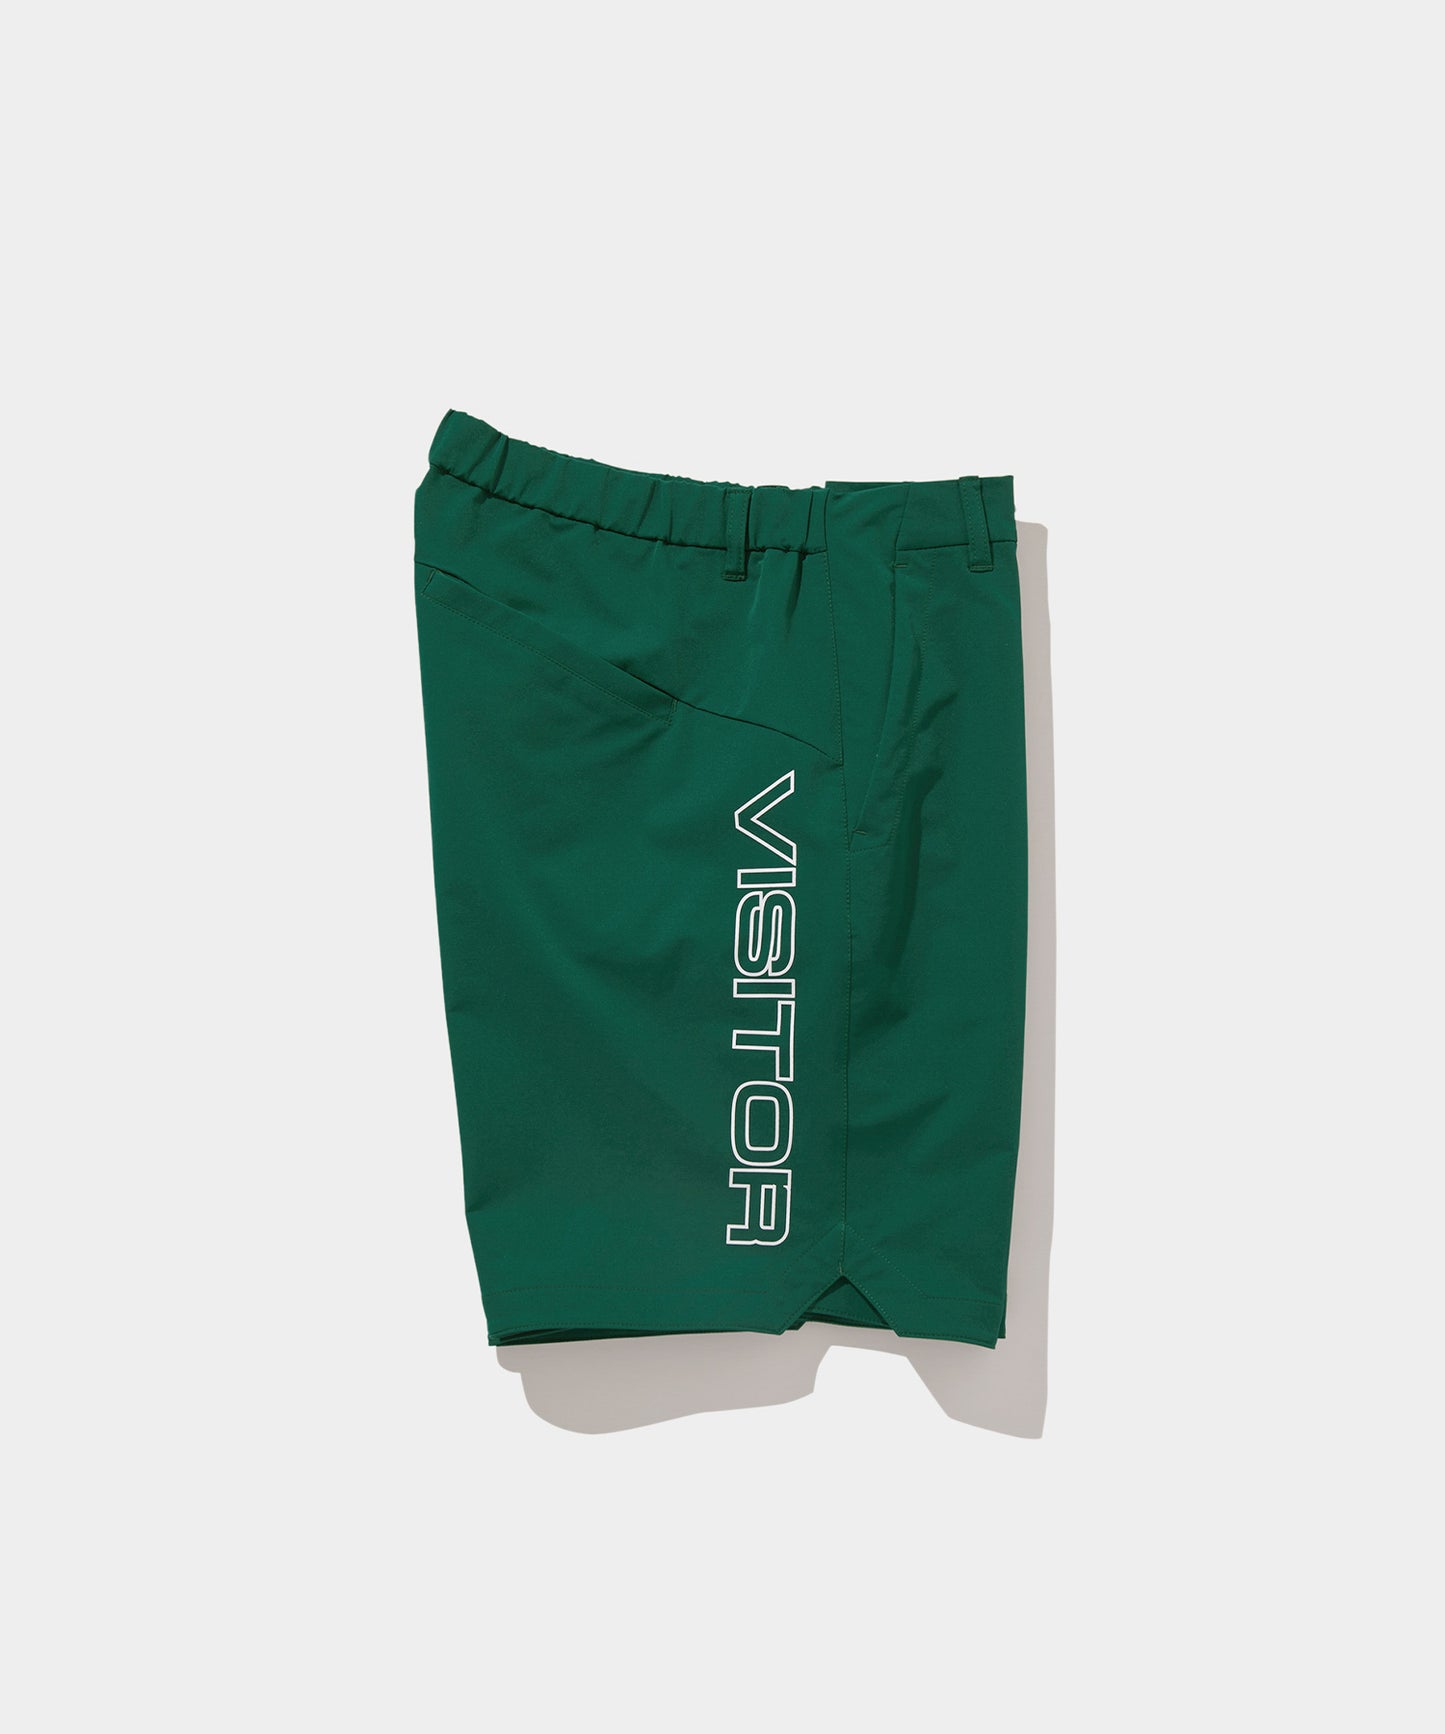 Printed shorts GREEN